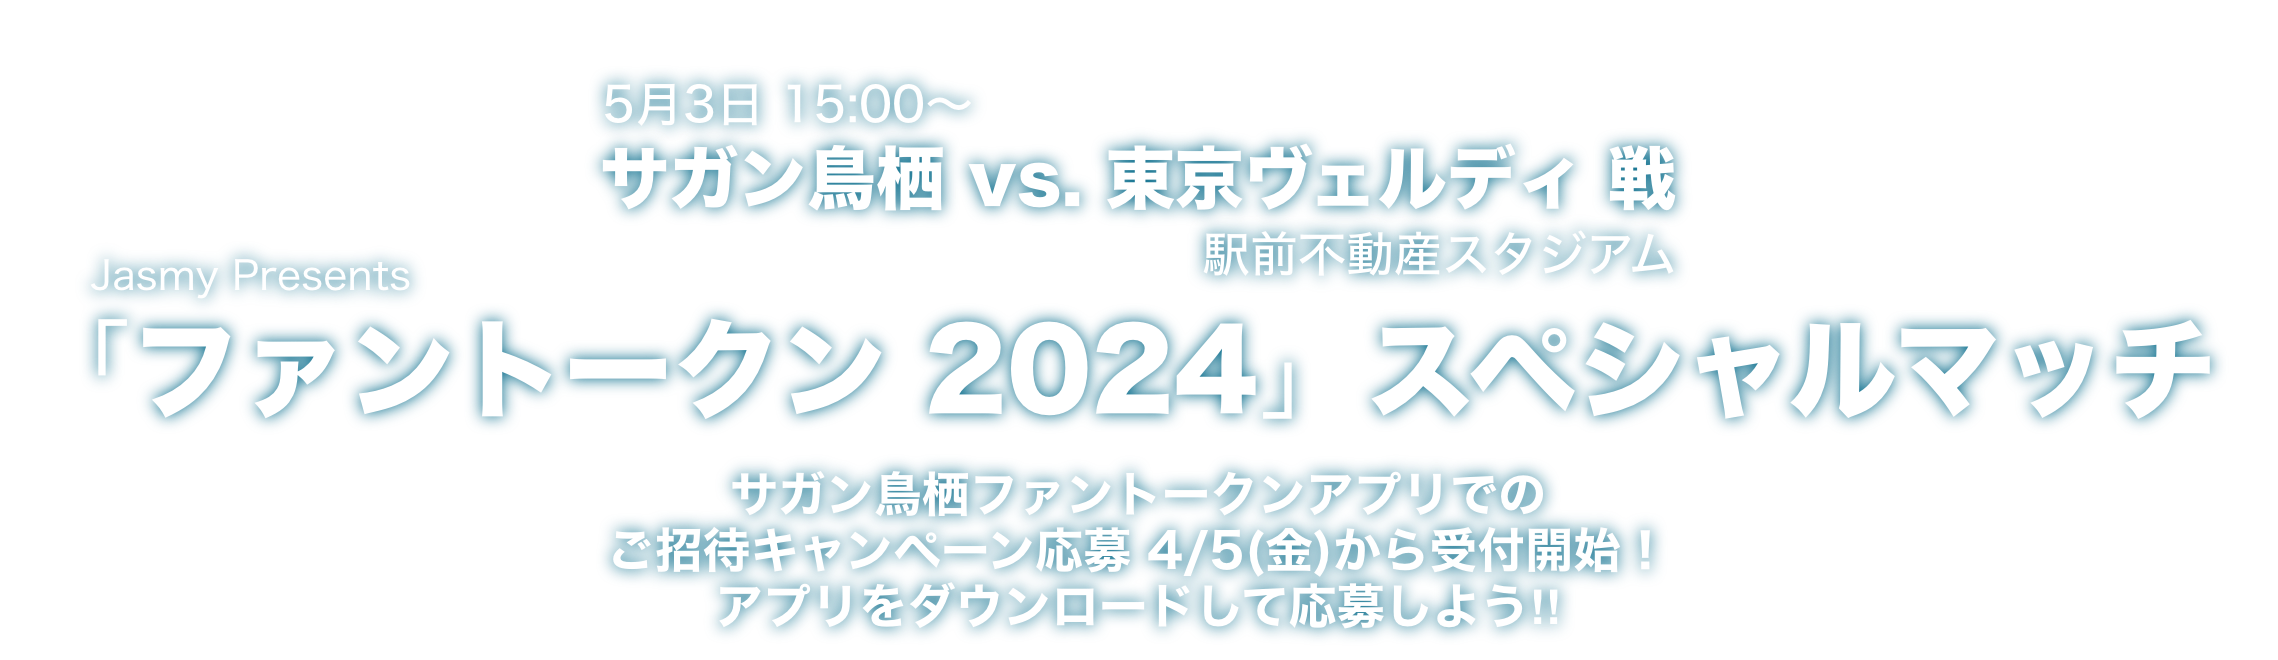 Jasmy Presents「ファントークン 2024」スペシャルマッチ 